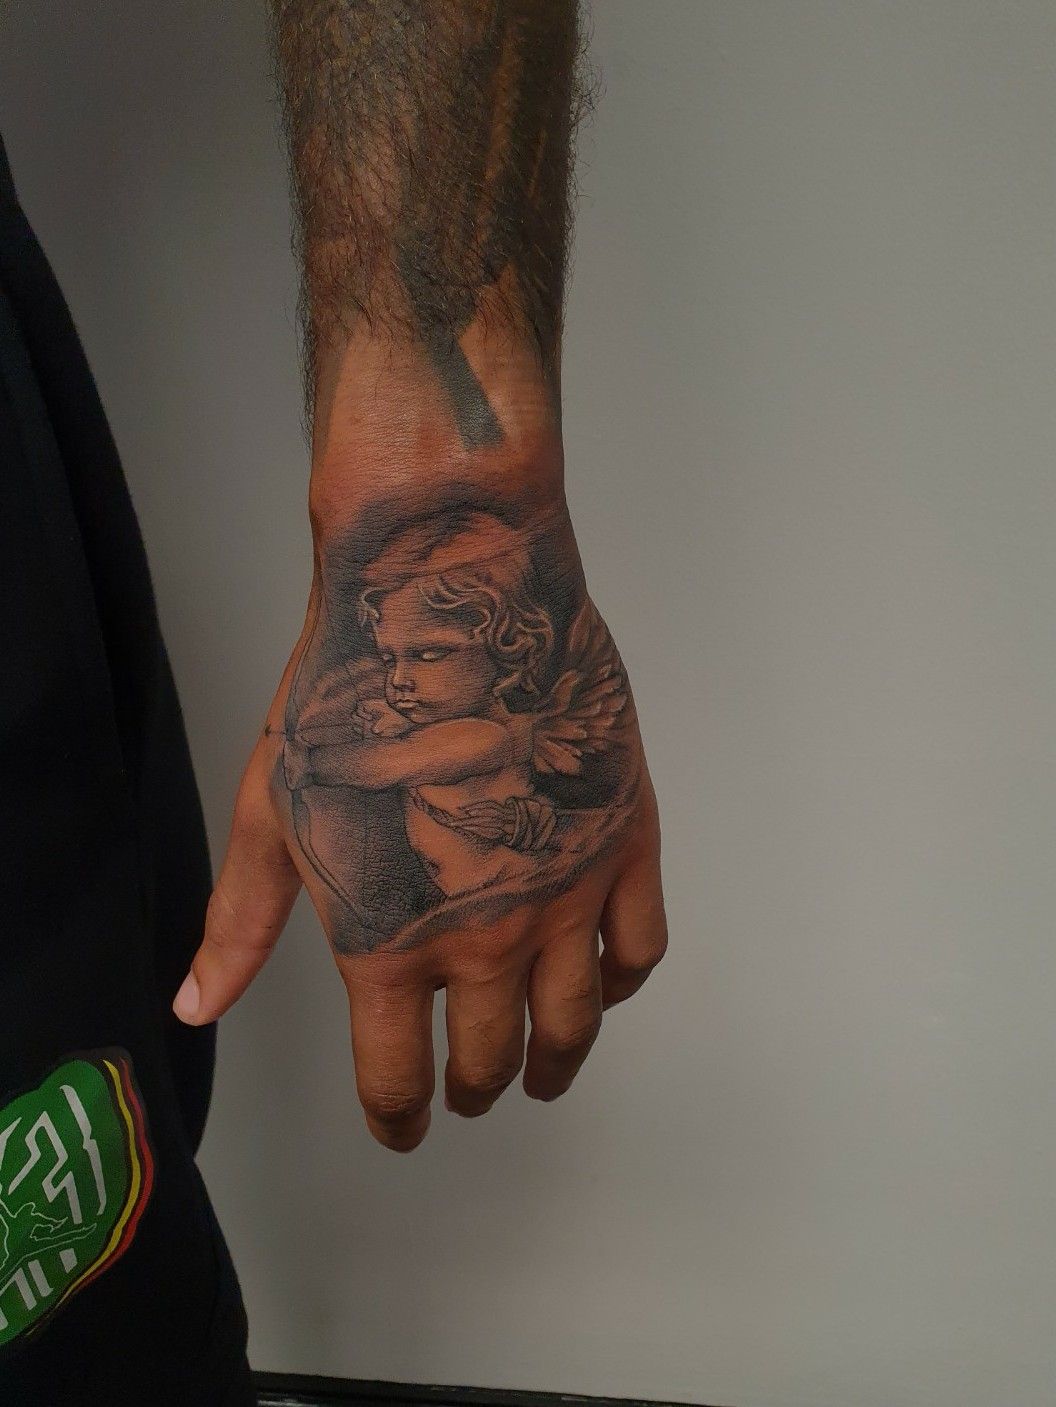 Lil durk hand tattoo meaningTikTok Search